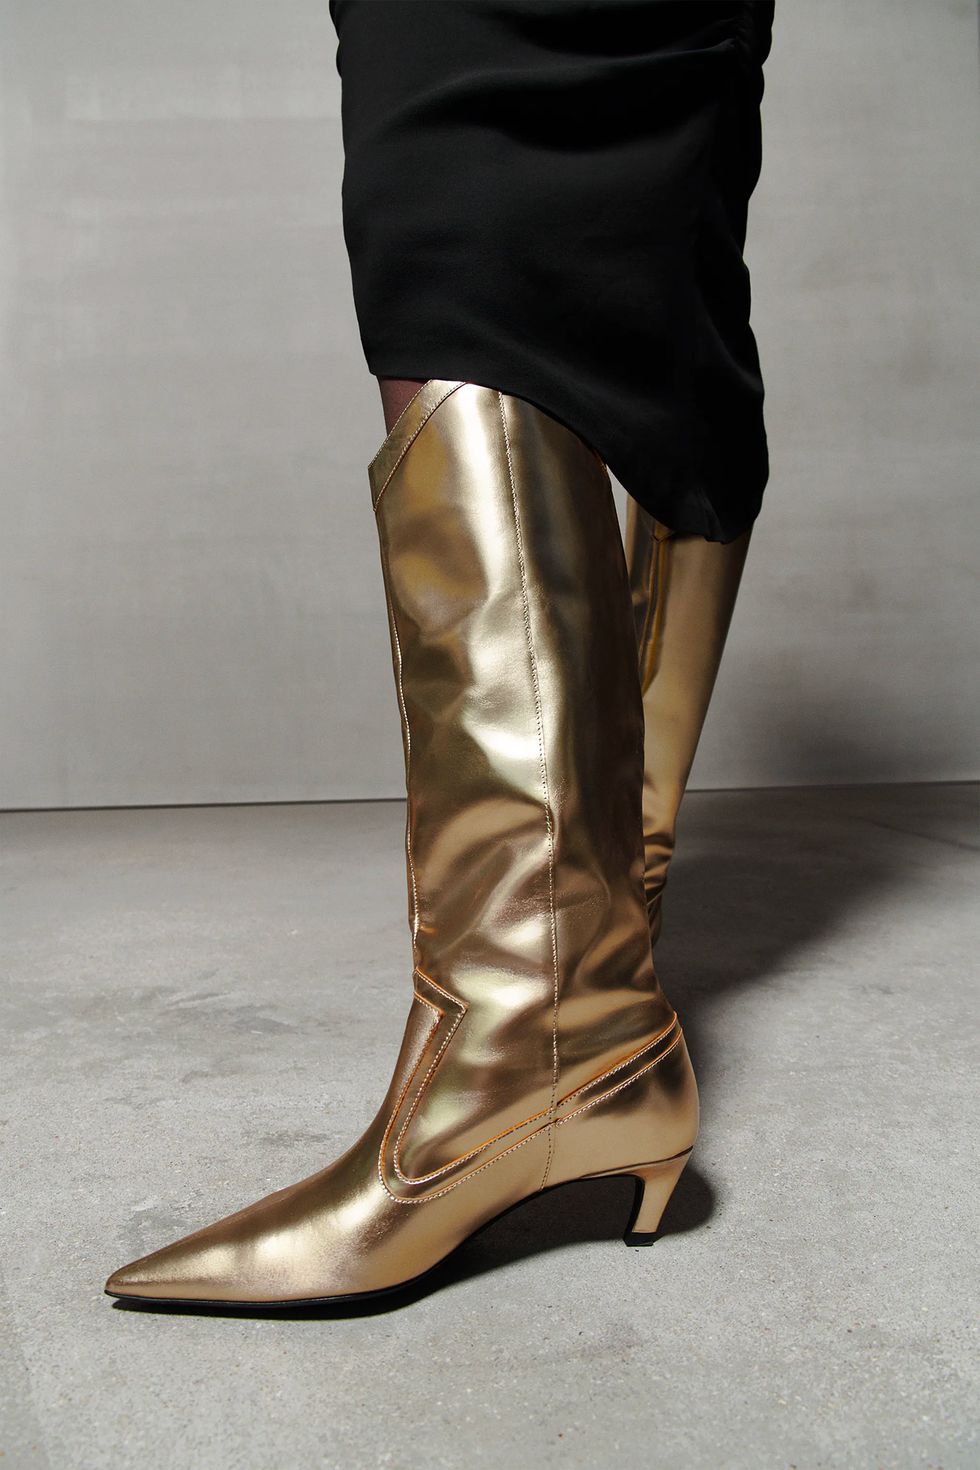 Zara saca sus famosas botas doradas esta vez con tacón sensato